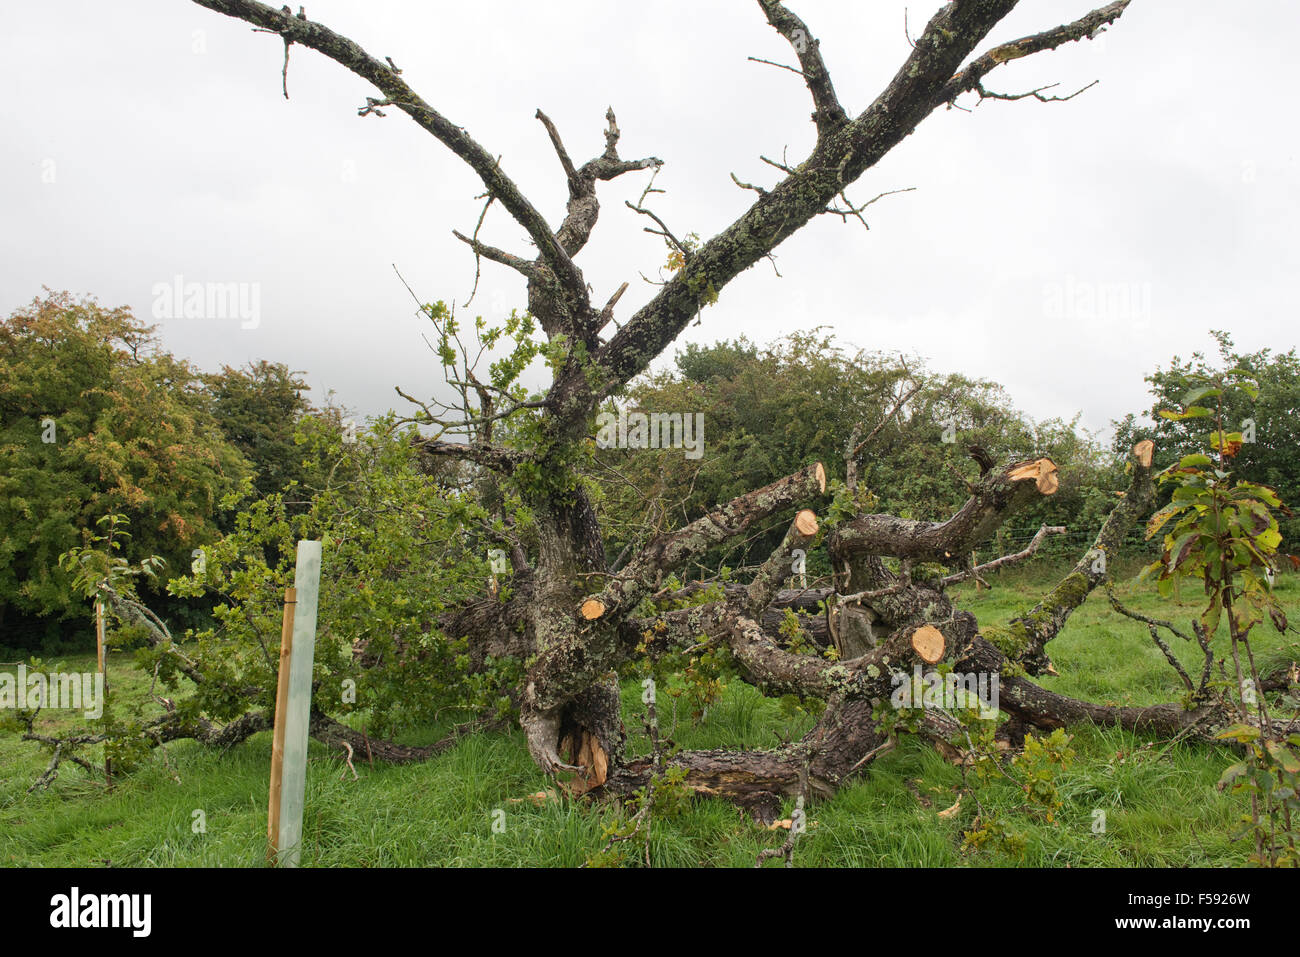 Fallen Oak tree, Quercus robur, avec feuillage clairsemé pourries et tués par plusieurs champignons pathogènes, Berkshire, Septembre Banque D'Images